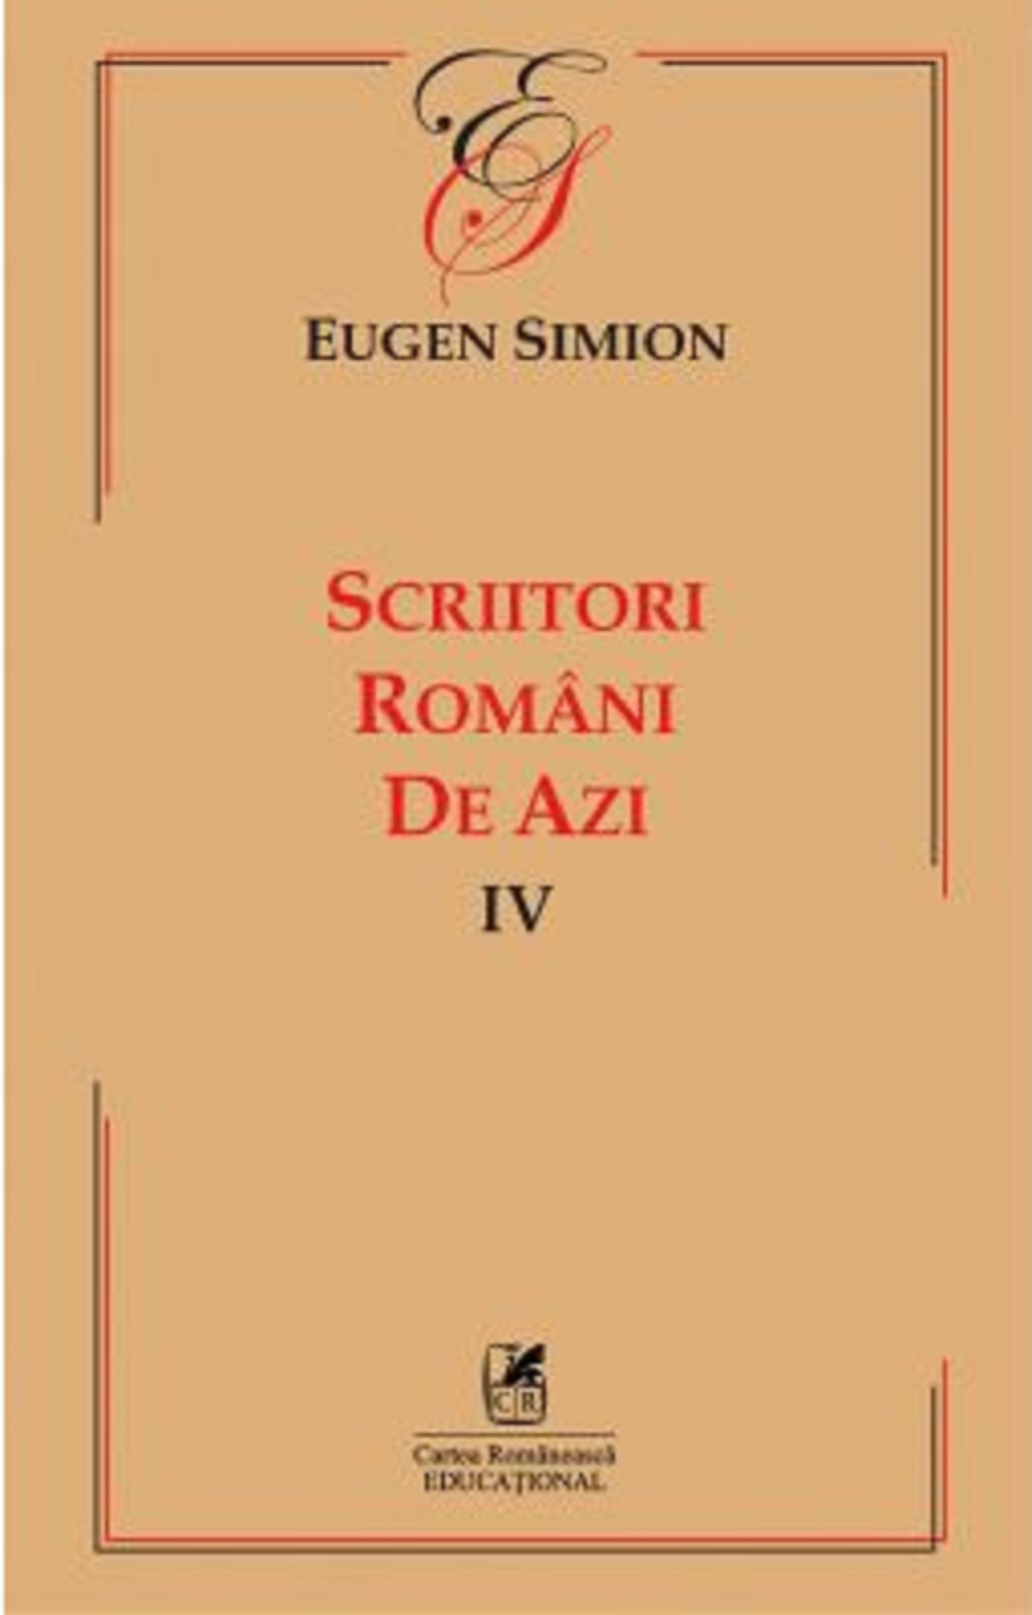 Scriitorii romani de azi IV | Eugen Simion azi